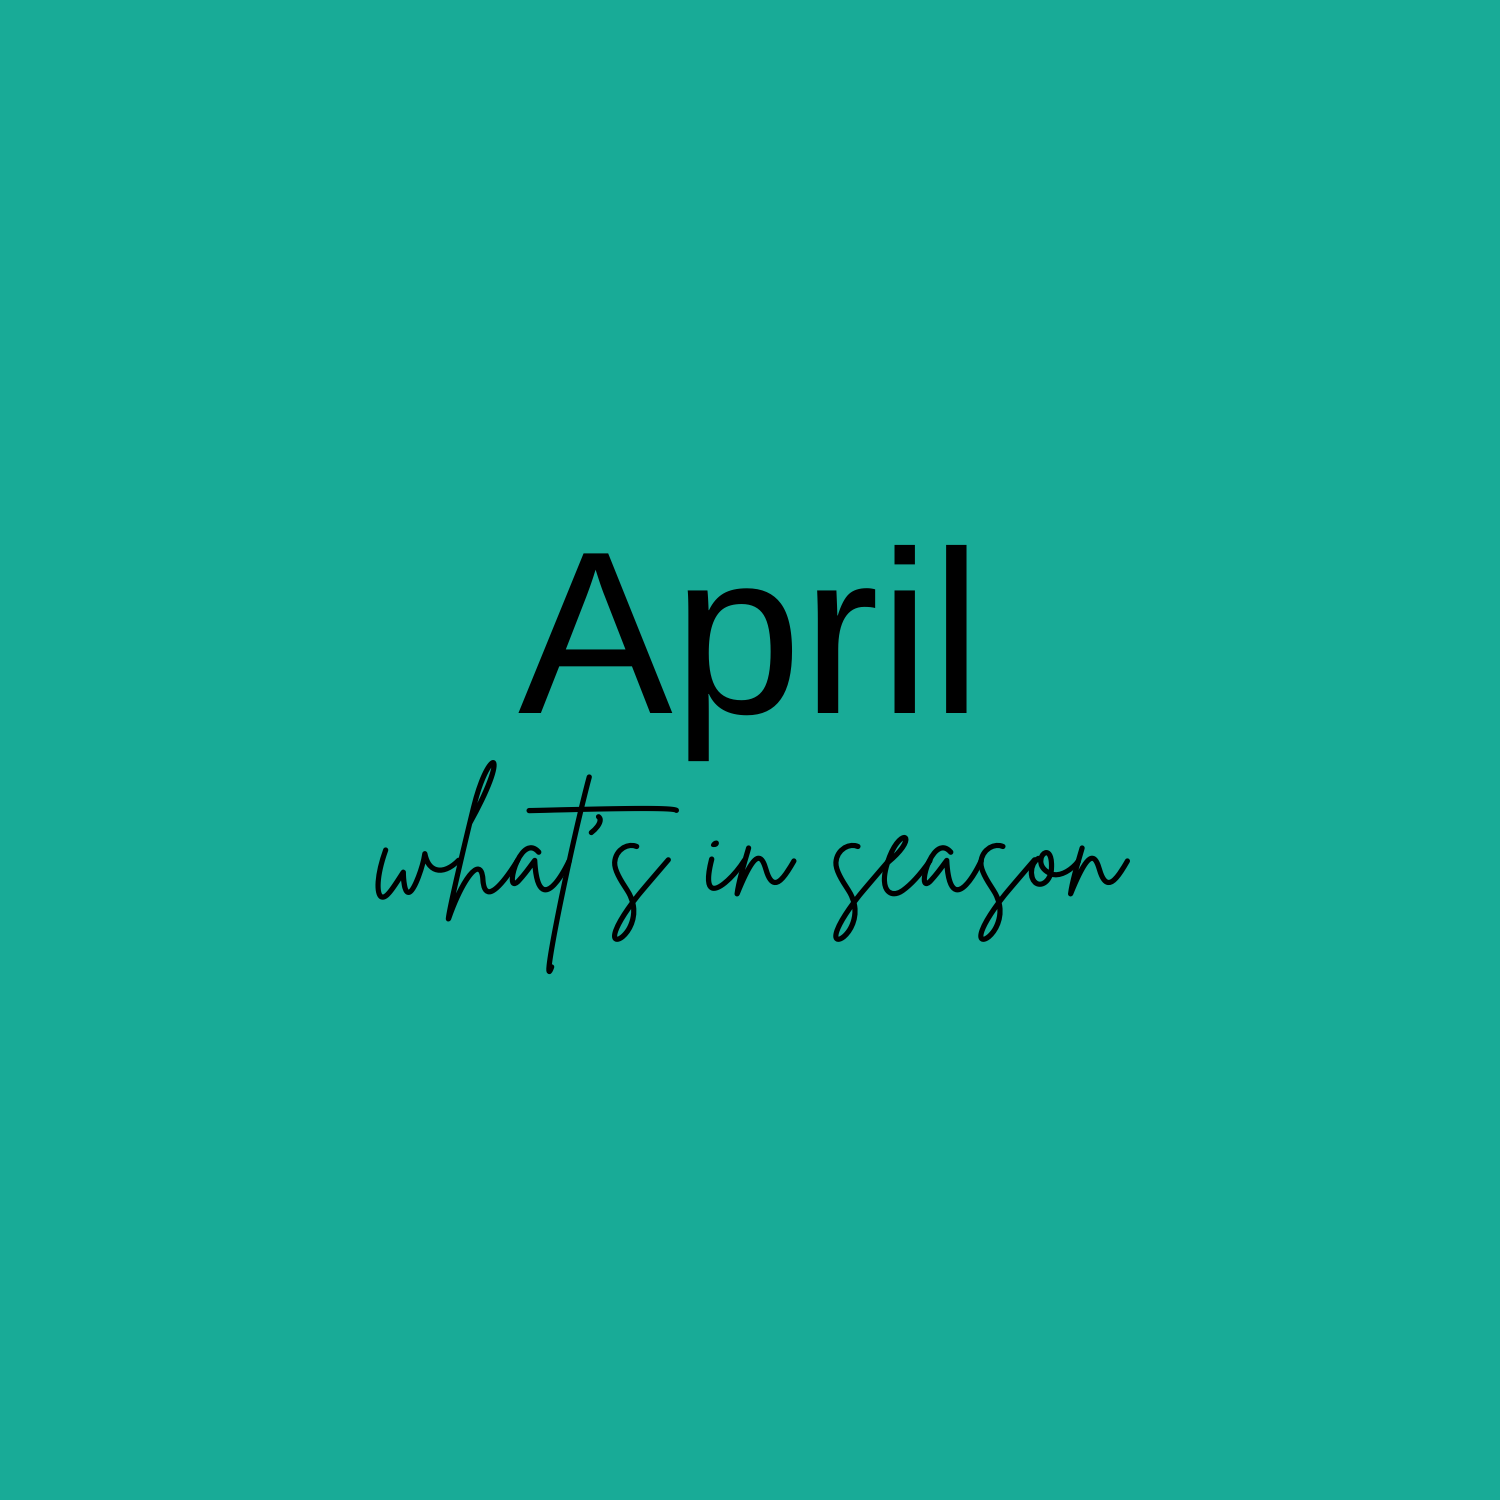 -What’s in Season in April?